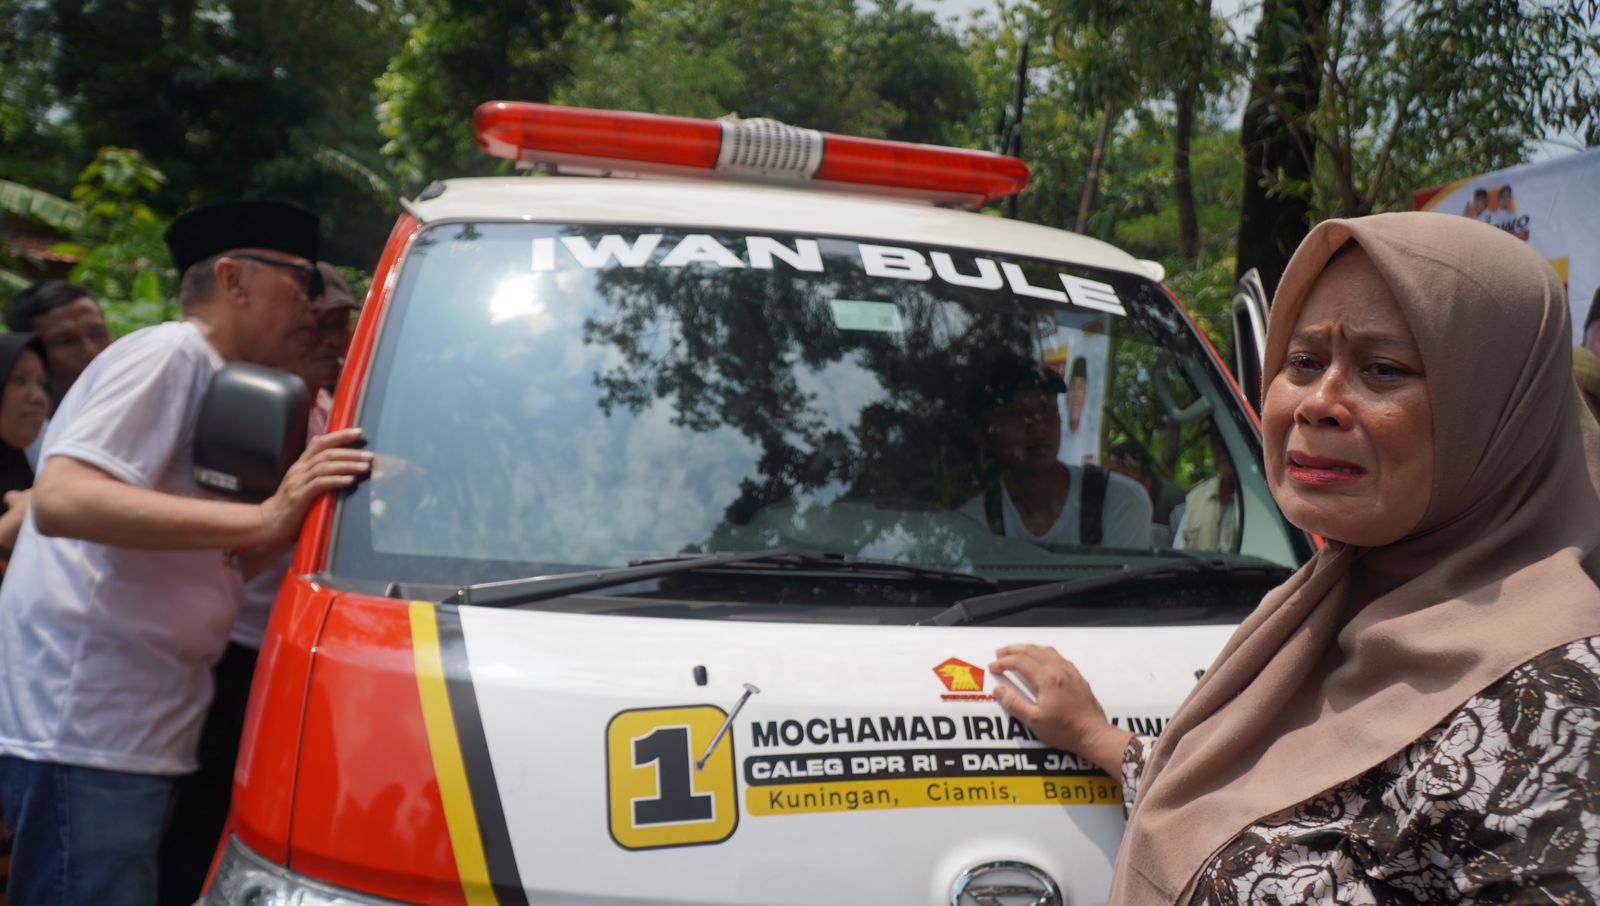 Tangis Haru Warga Iringi Penyerahan Bantuan Ambulans Iwan Bule ke Warga Cibingbin Kuningan